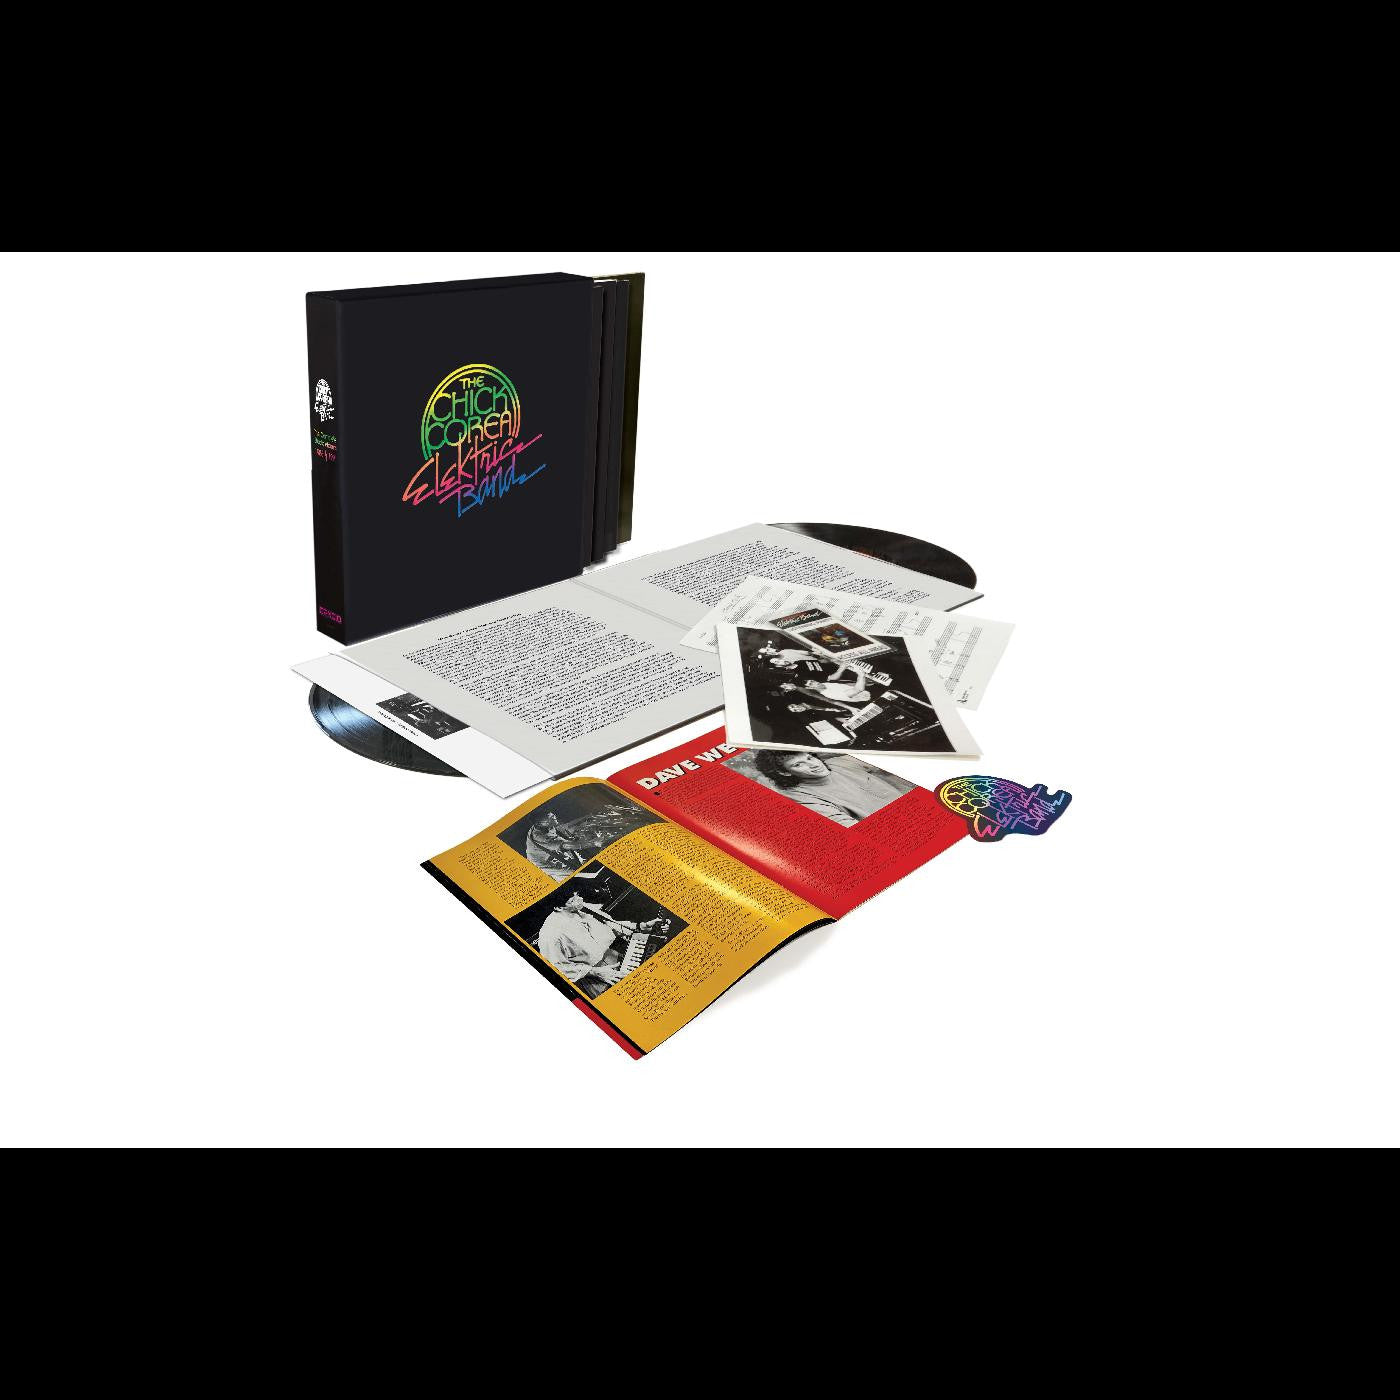 Chick Corea Elektric Band - The Complete Studio Recordings 1986-1991 [Box Set]